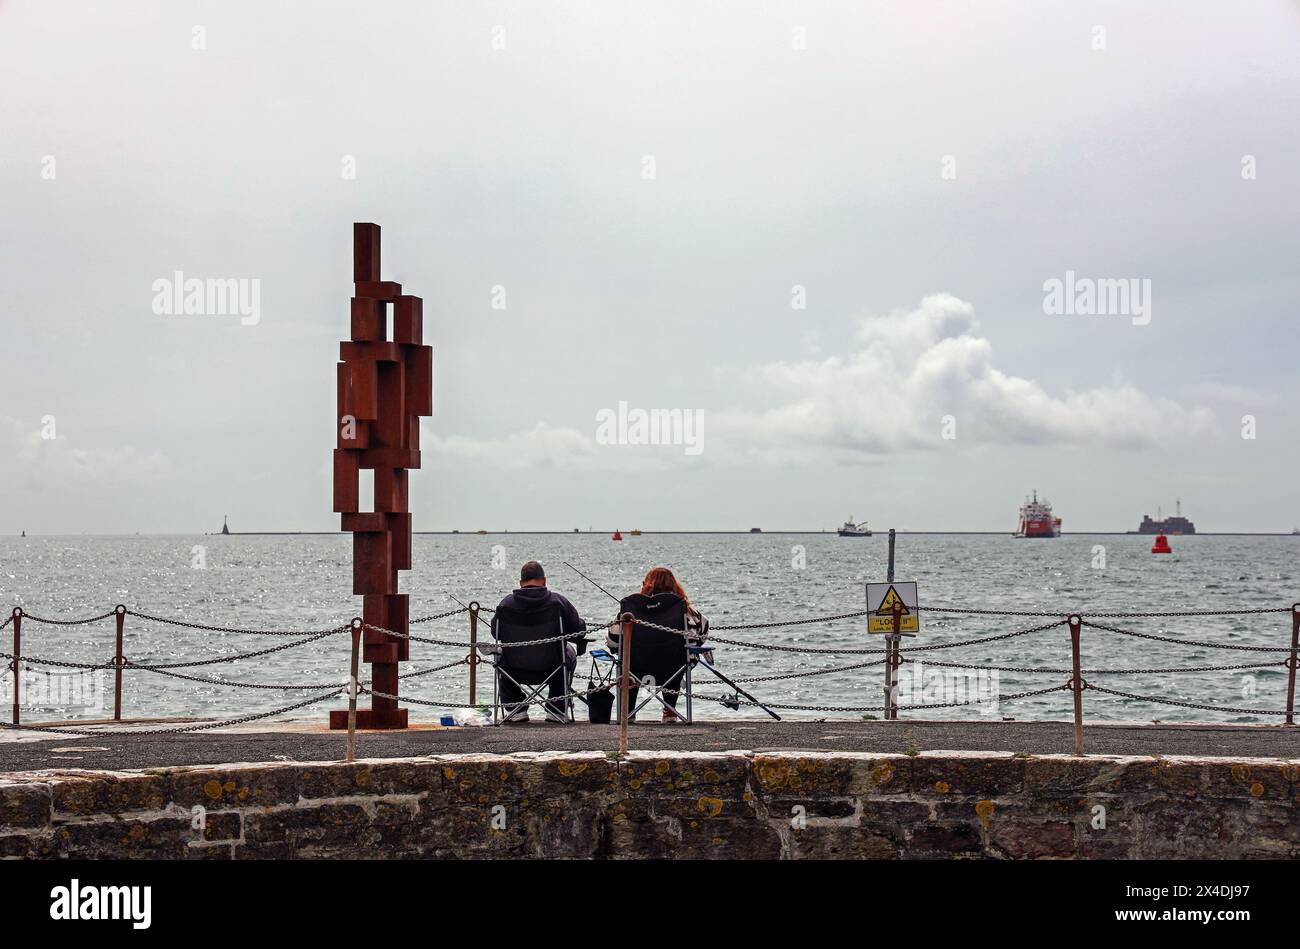 Ami du pêcheur, la sculpture look II tient compagnie à un couple de pêcheurs sur West Pier Plymouth. Sculpture de 12 pieds « look II » de Sir Anthony Gormley sur West Hoe P. Banque D'Images